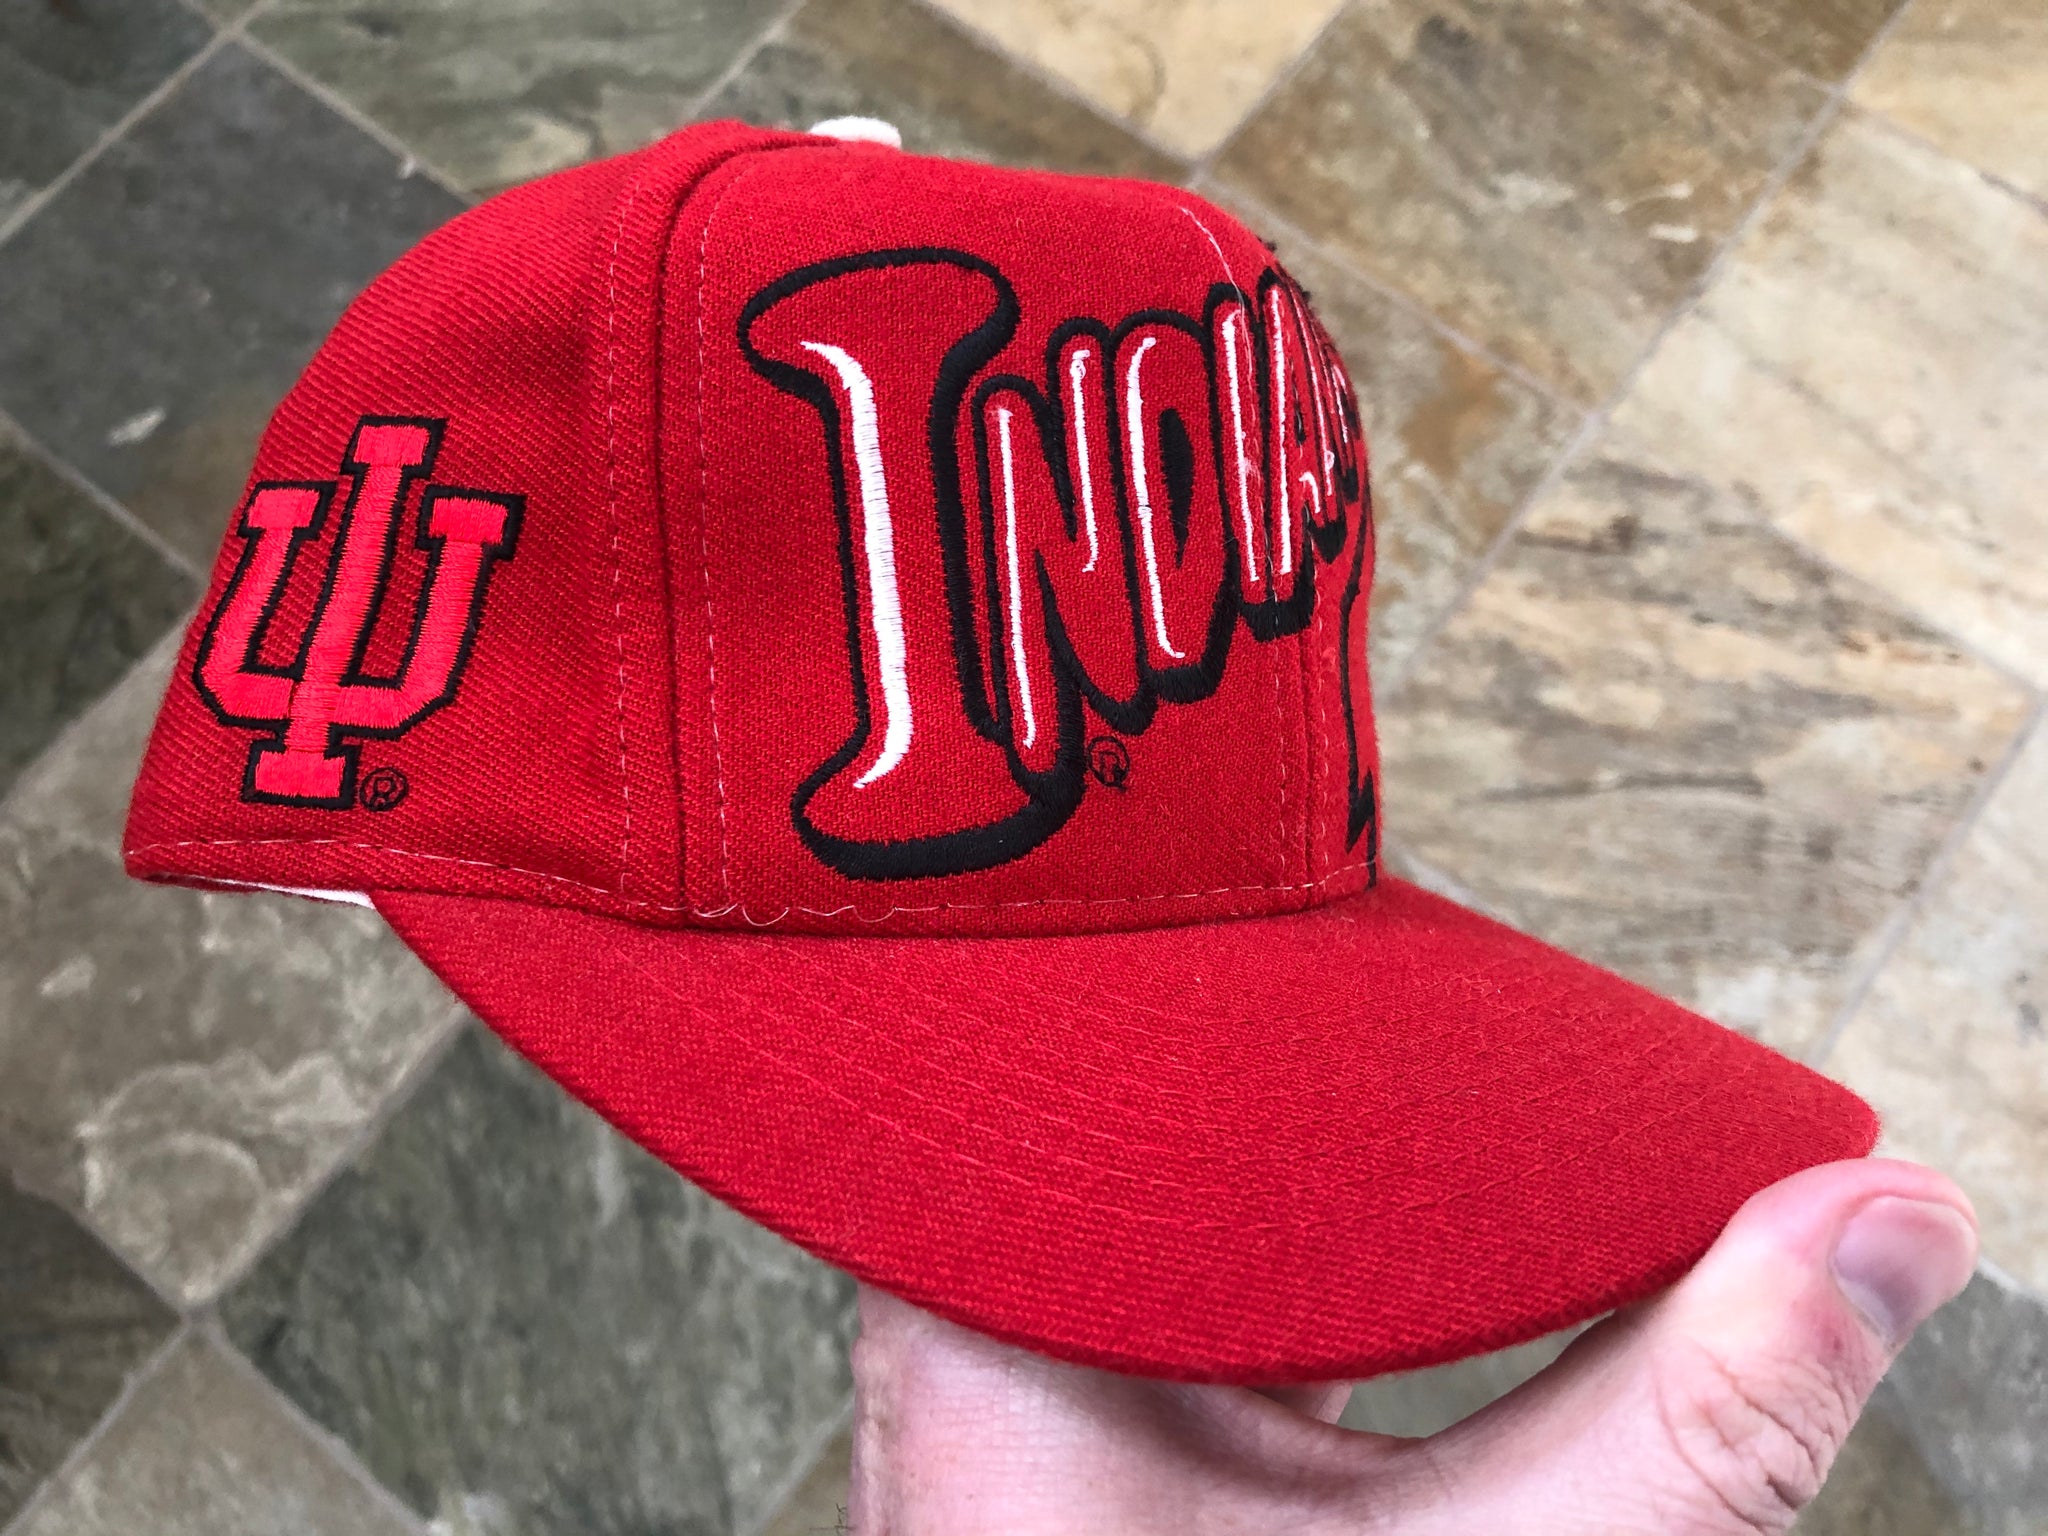 Vintage Indiana Hoosiers Snapback Hat Cap College Sports